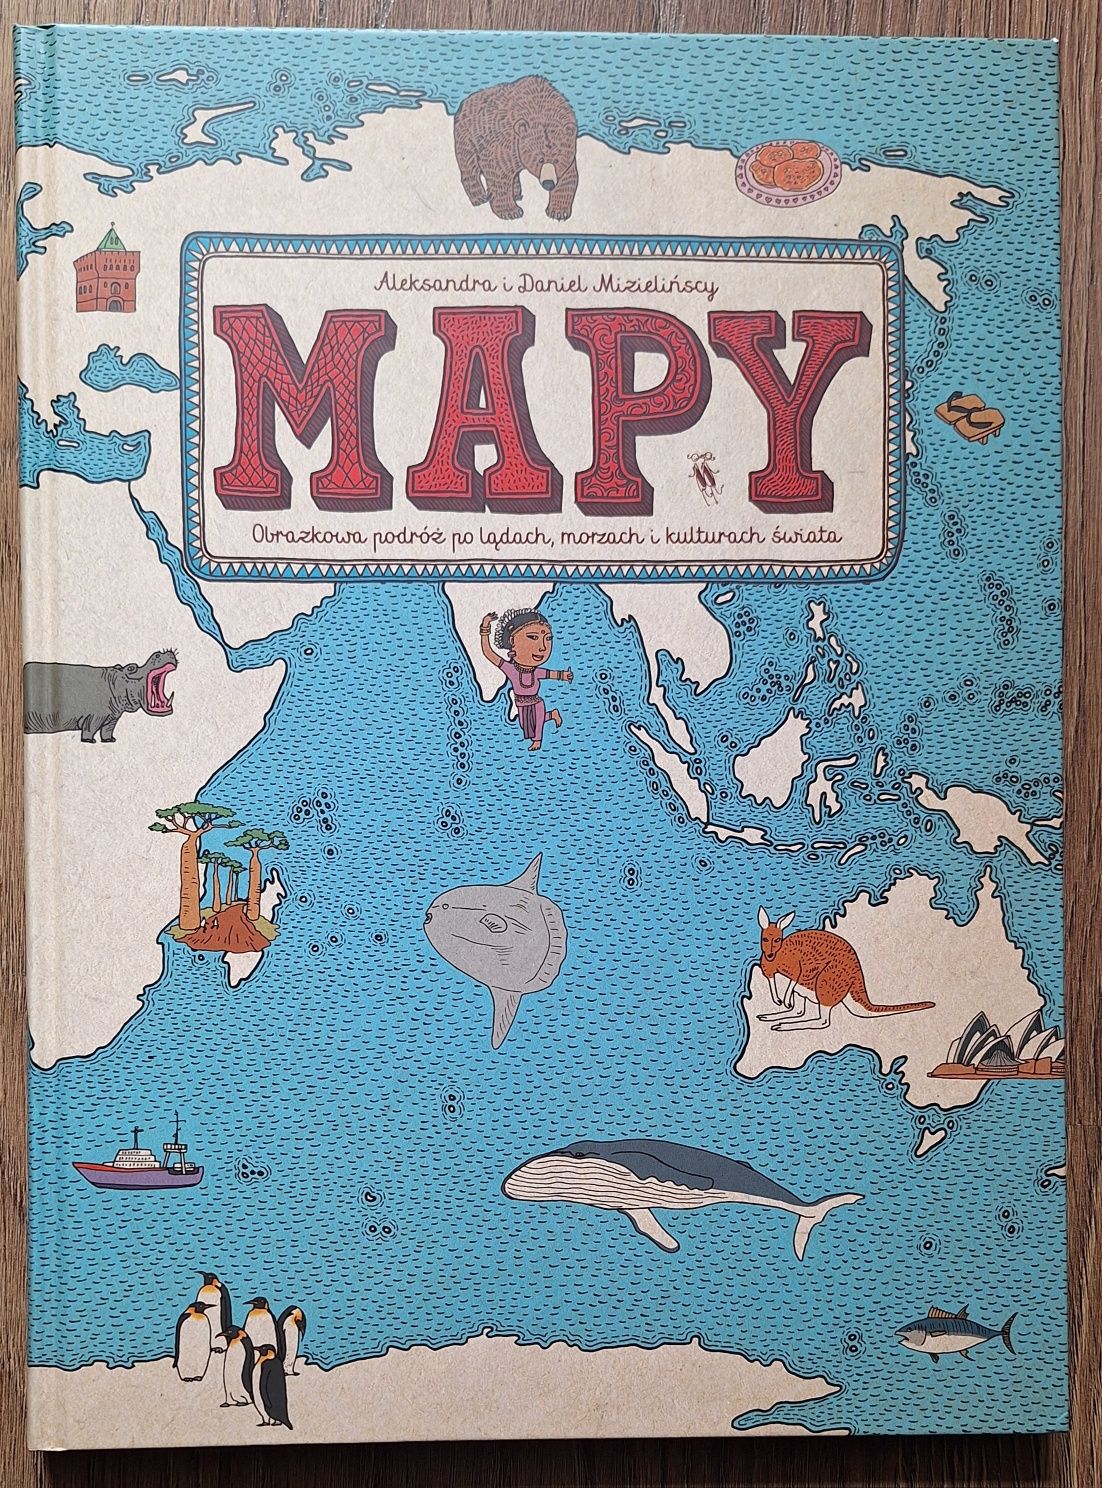 Książka Mapy Świata - obrazkowa Podróż dla dzieci NOWA duża